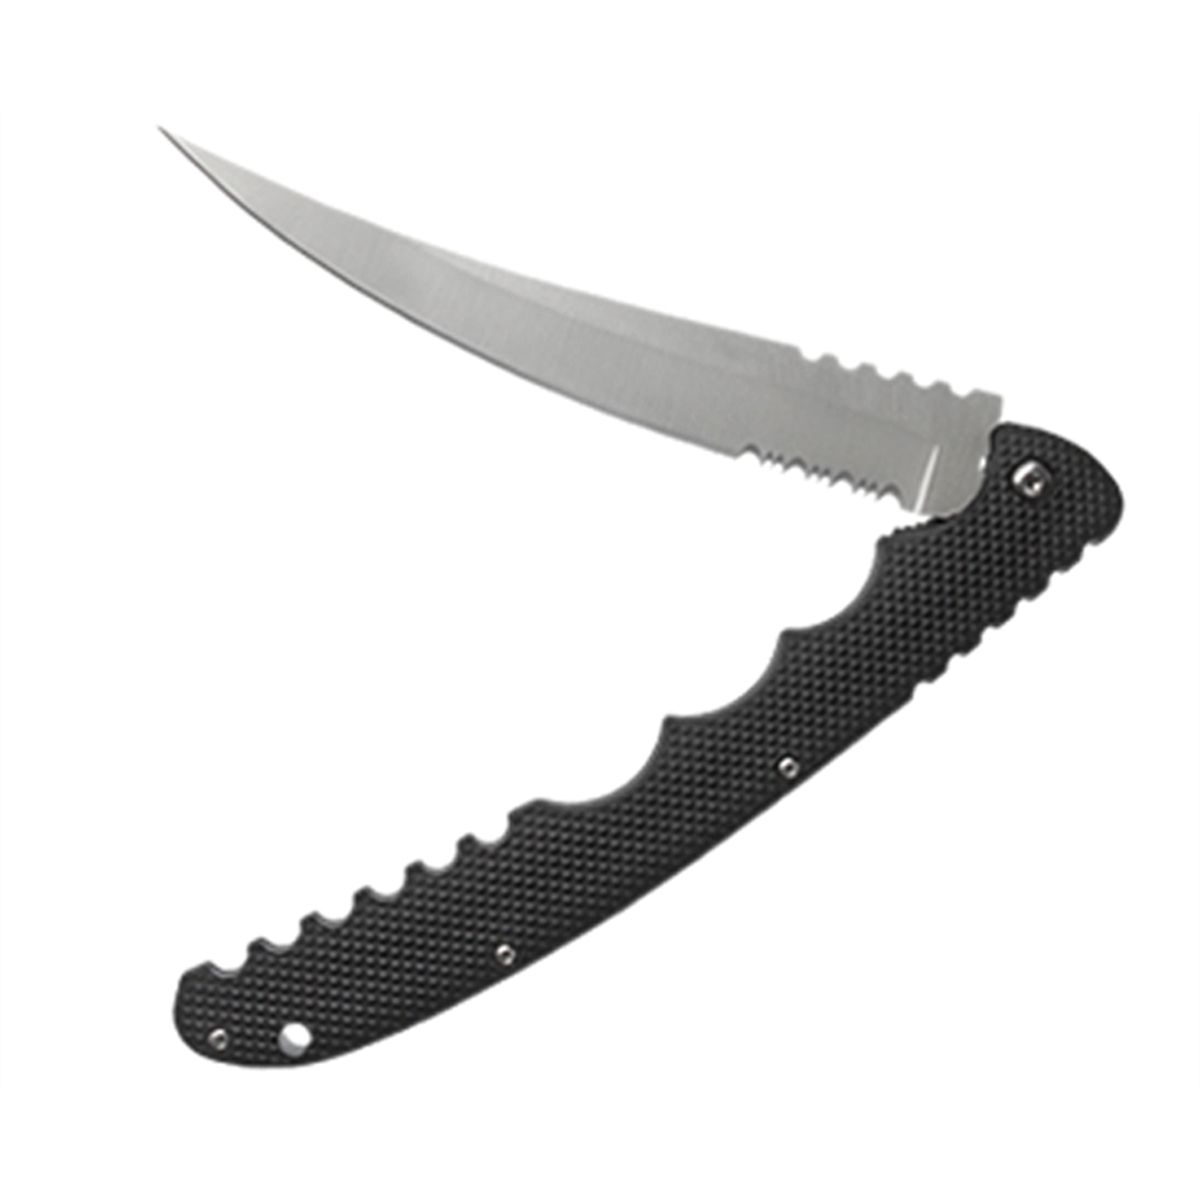 FT611 Folding Filet Knife